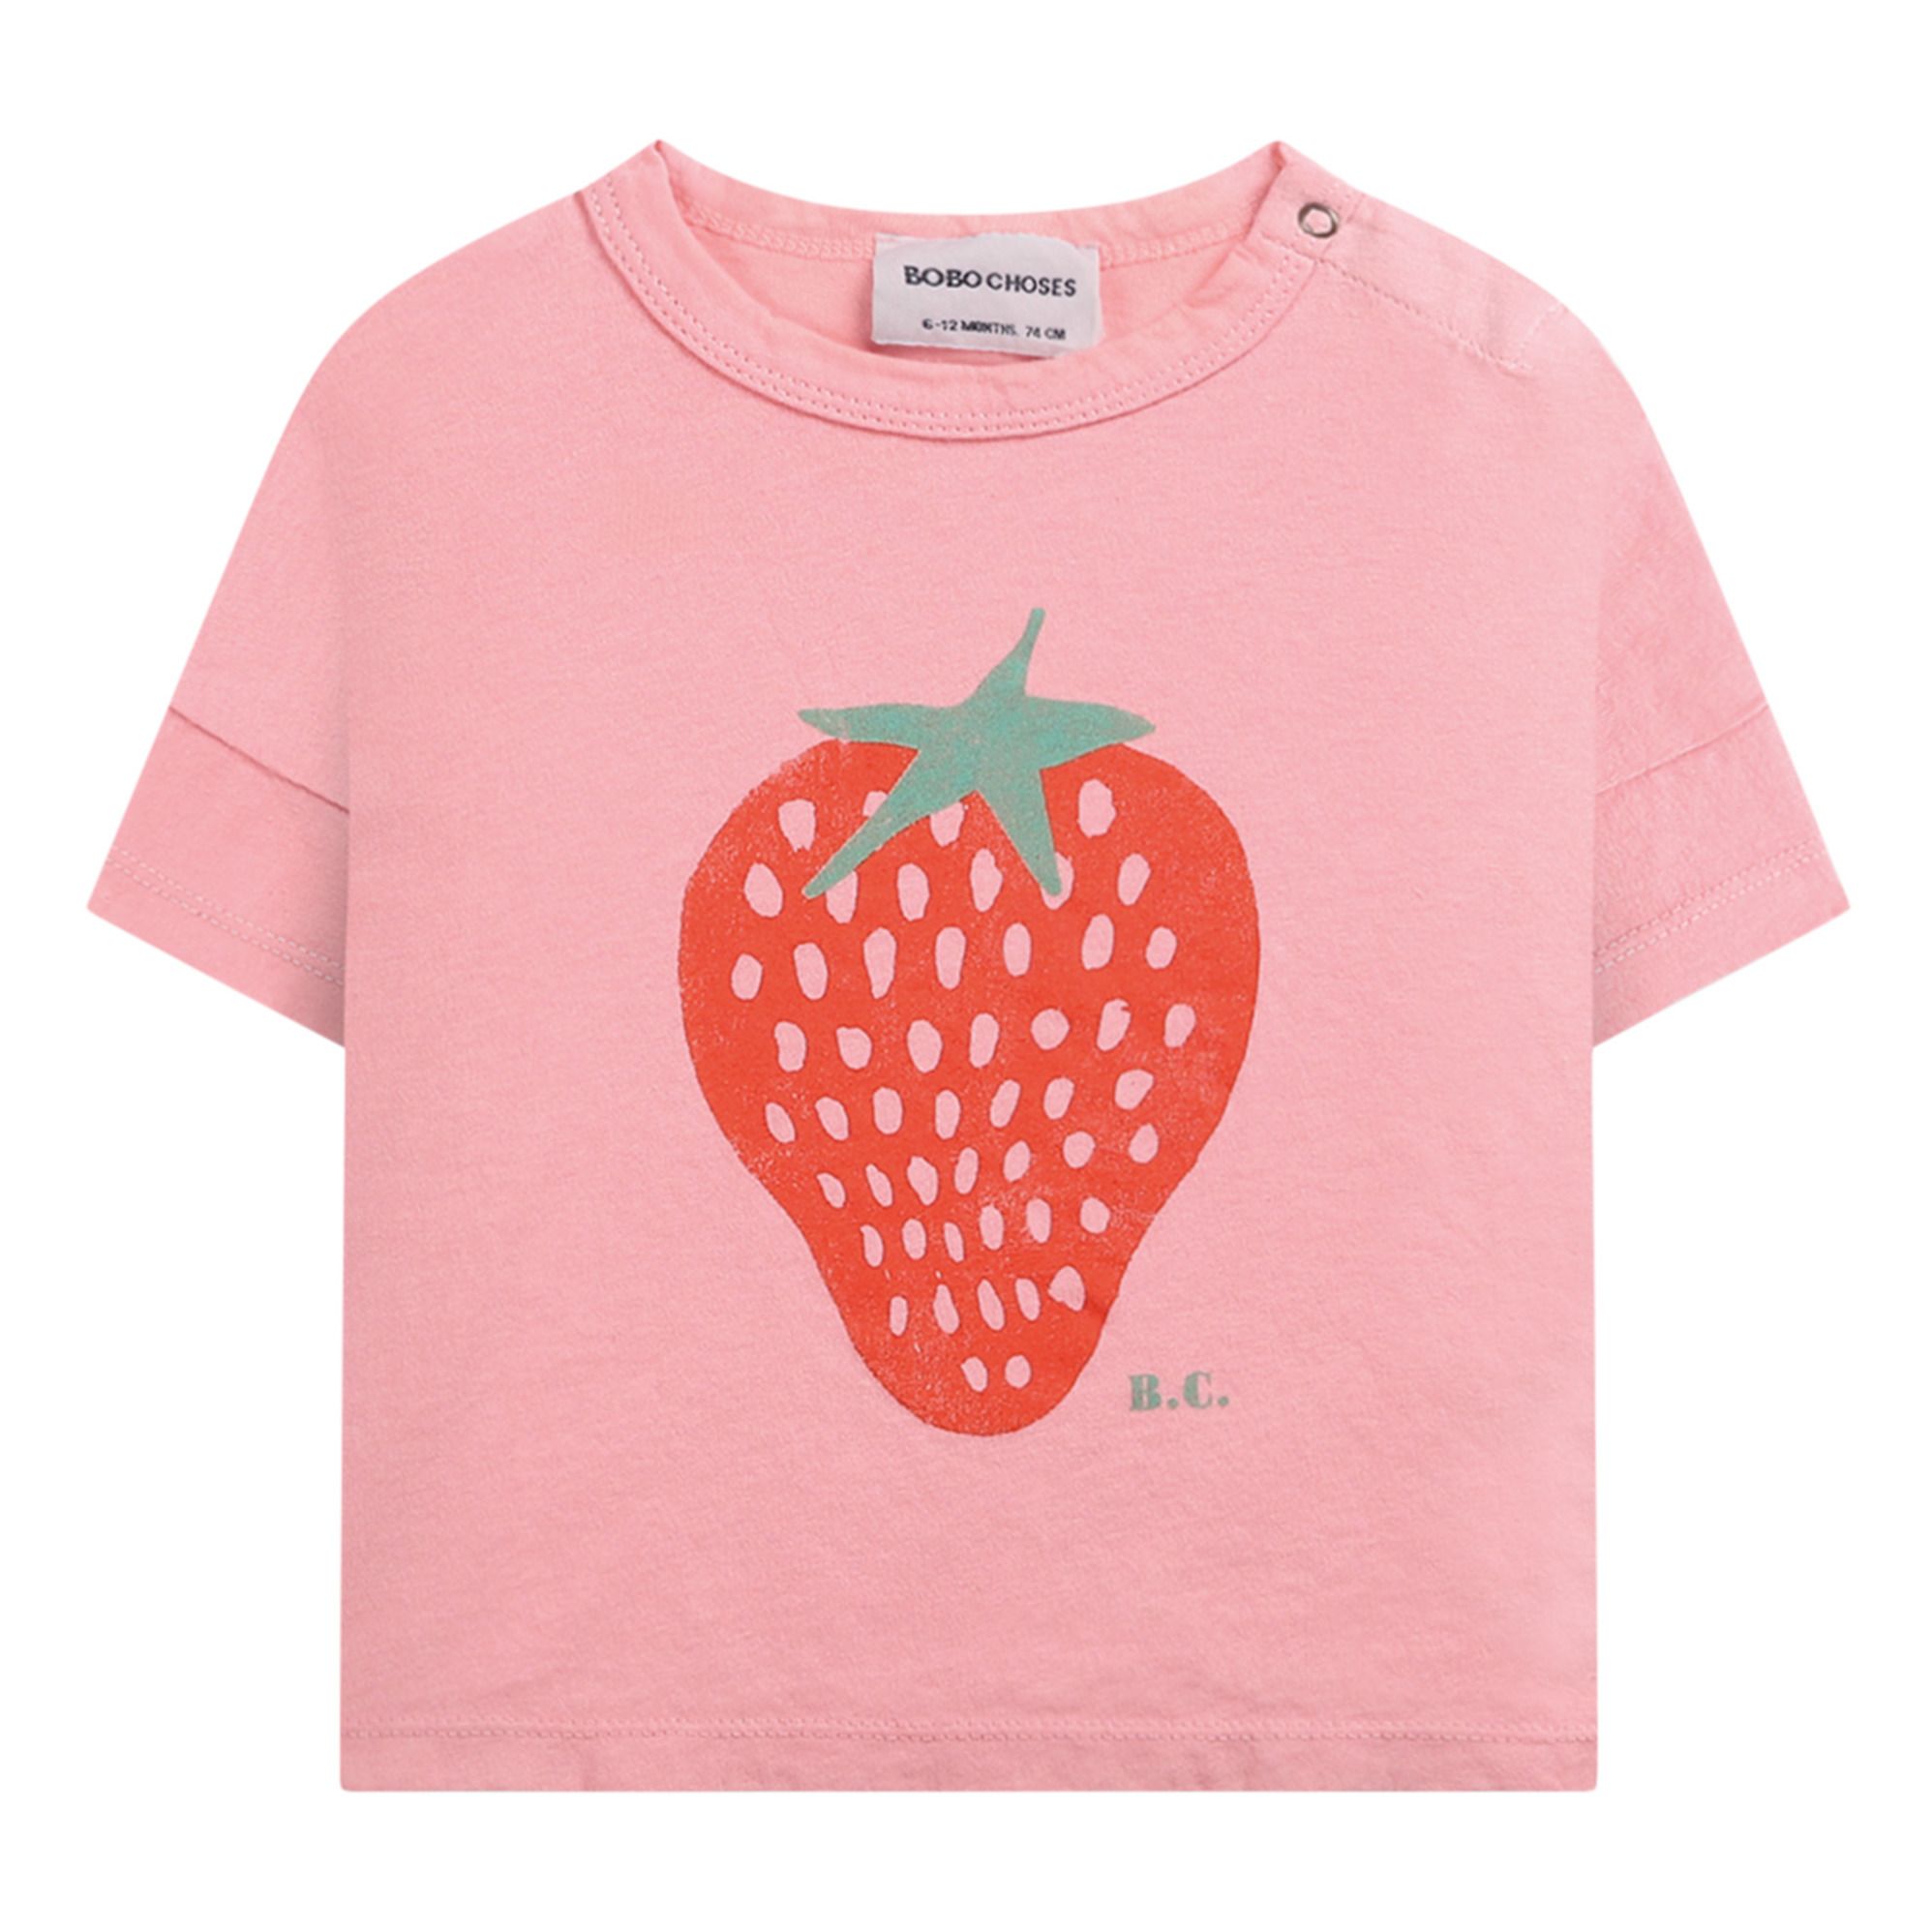 Bobo Choses - T-Shirt Coton Bio Fraise Bébé - Fille - Rose